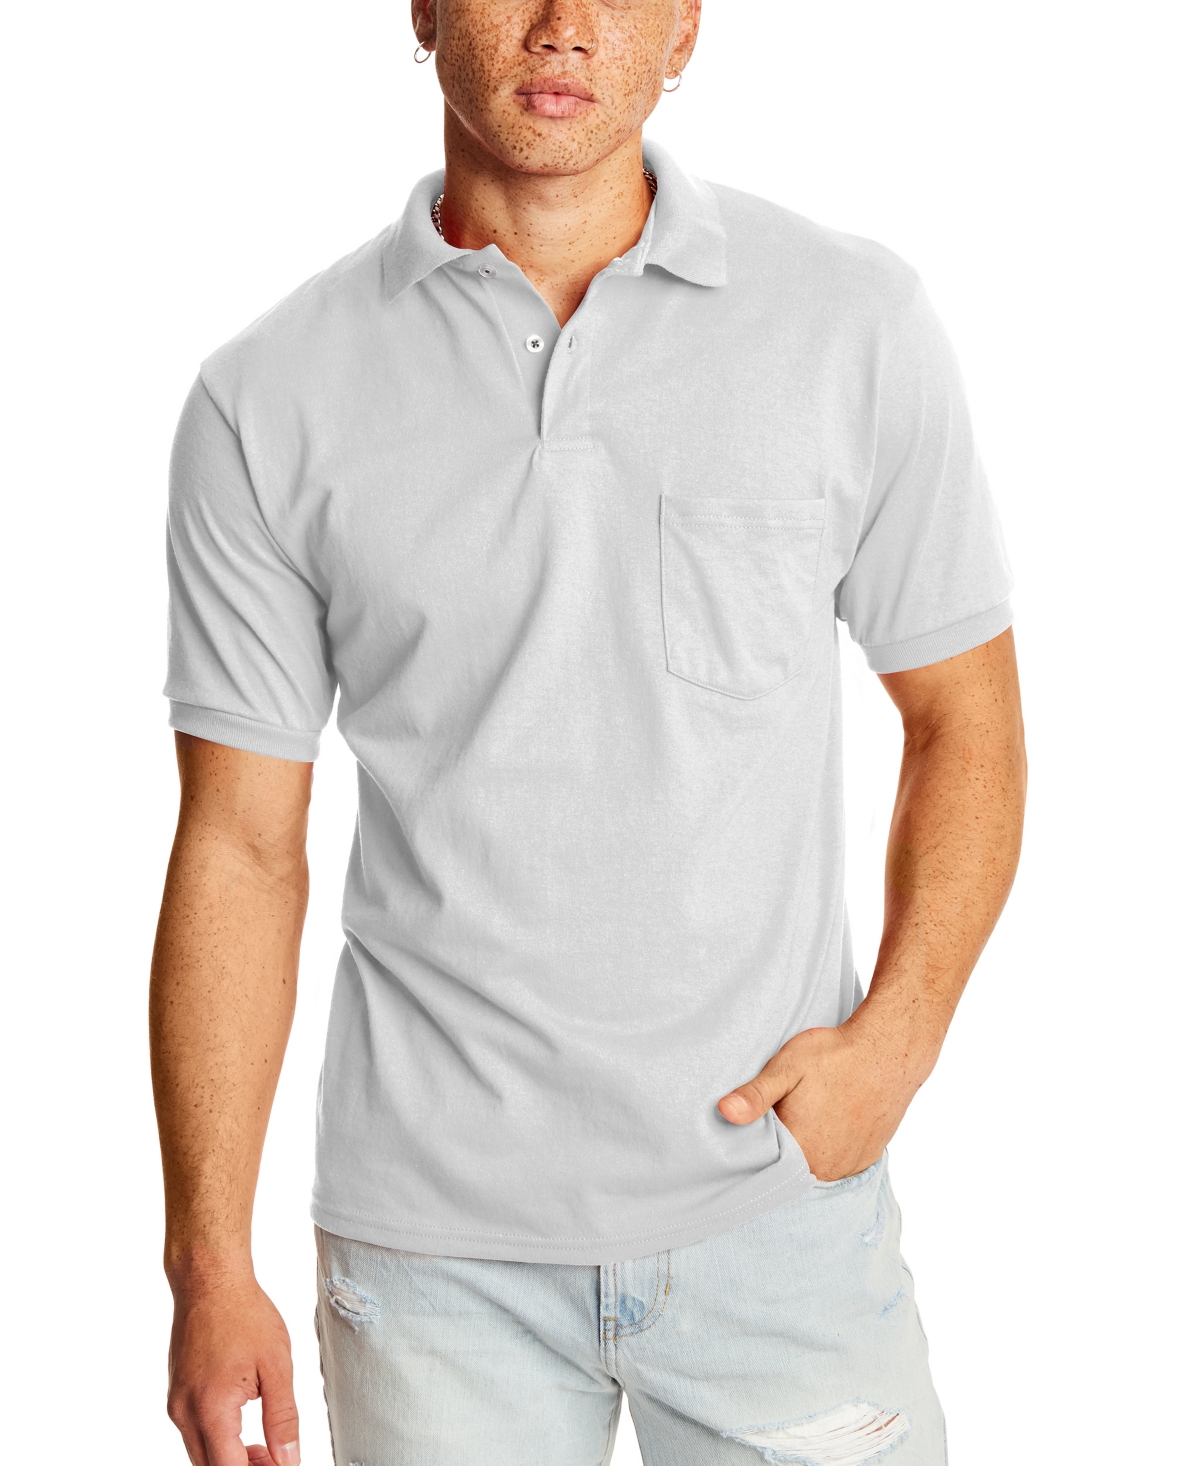 Hanes Ecosmart Men's Pocket Polo Shirt, 2-pack In White